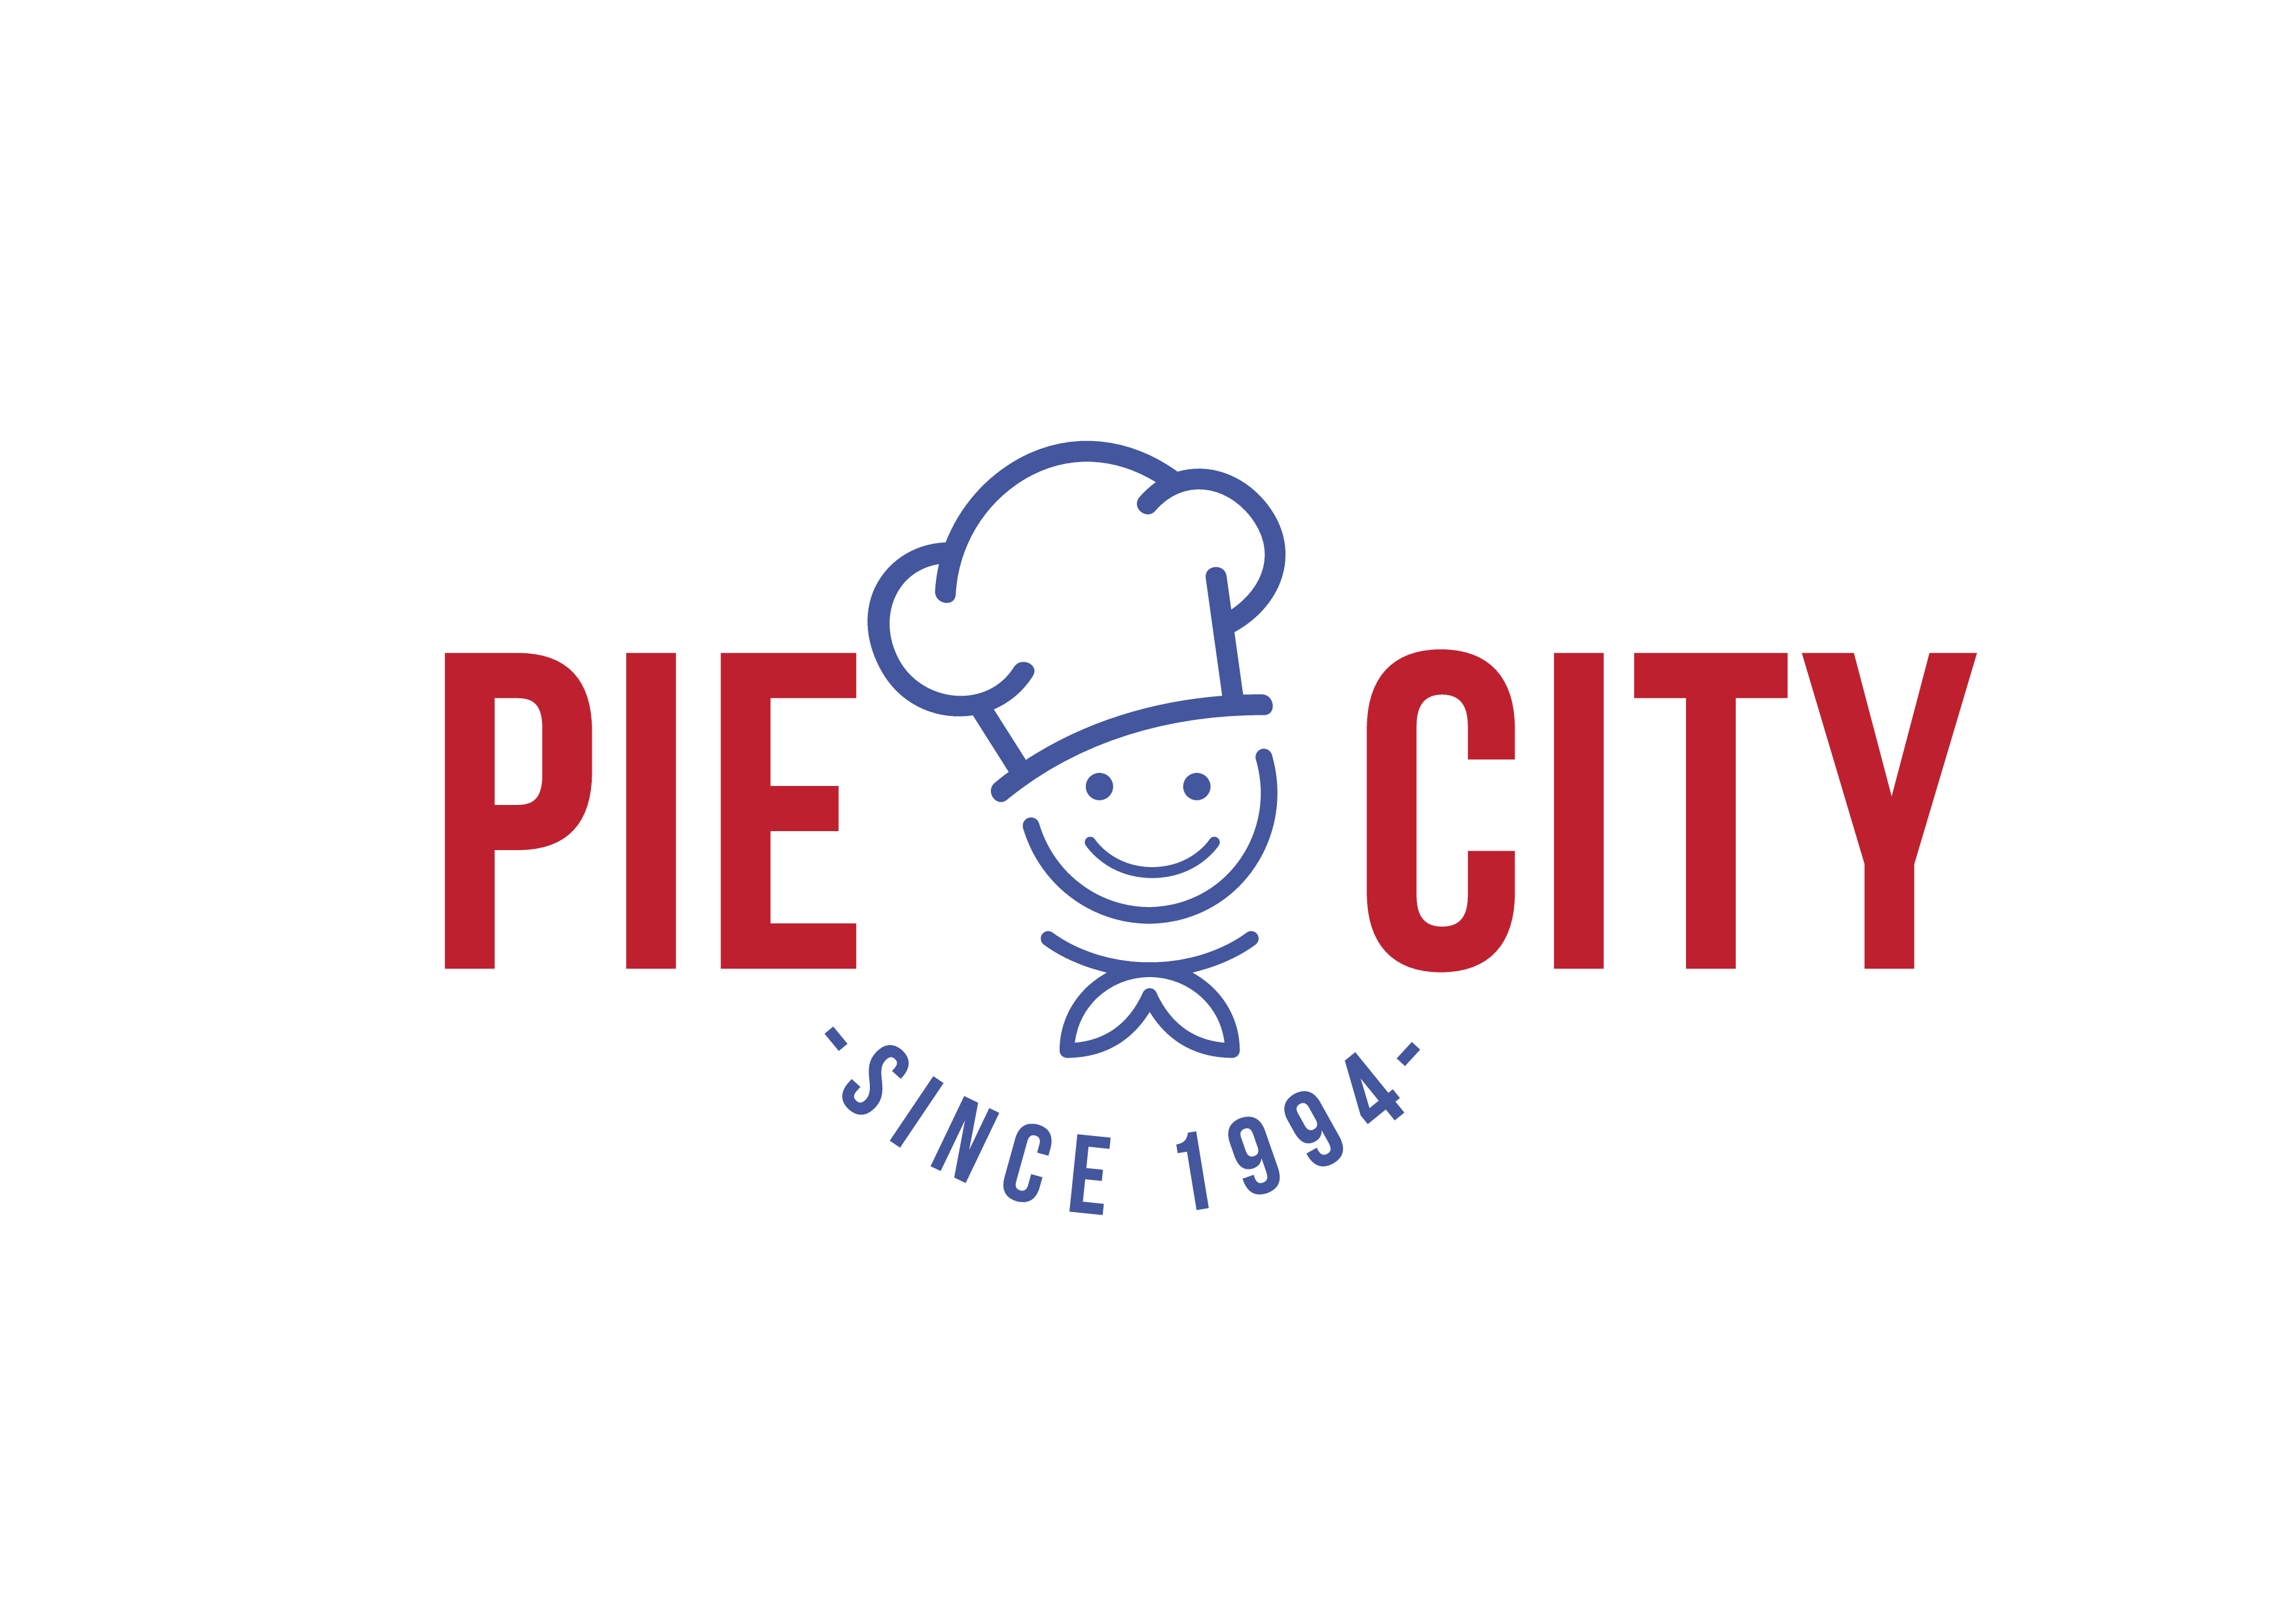 Pie City Holdings